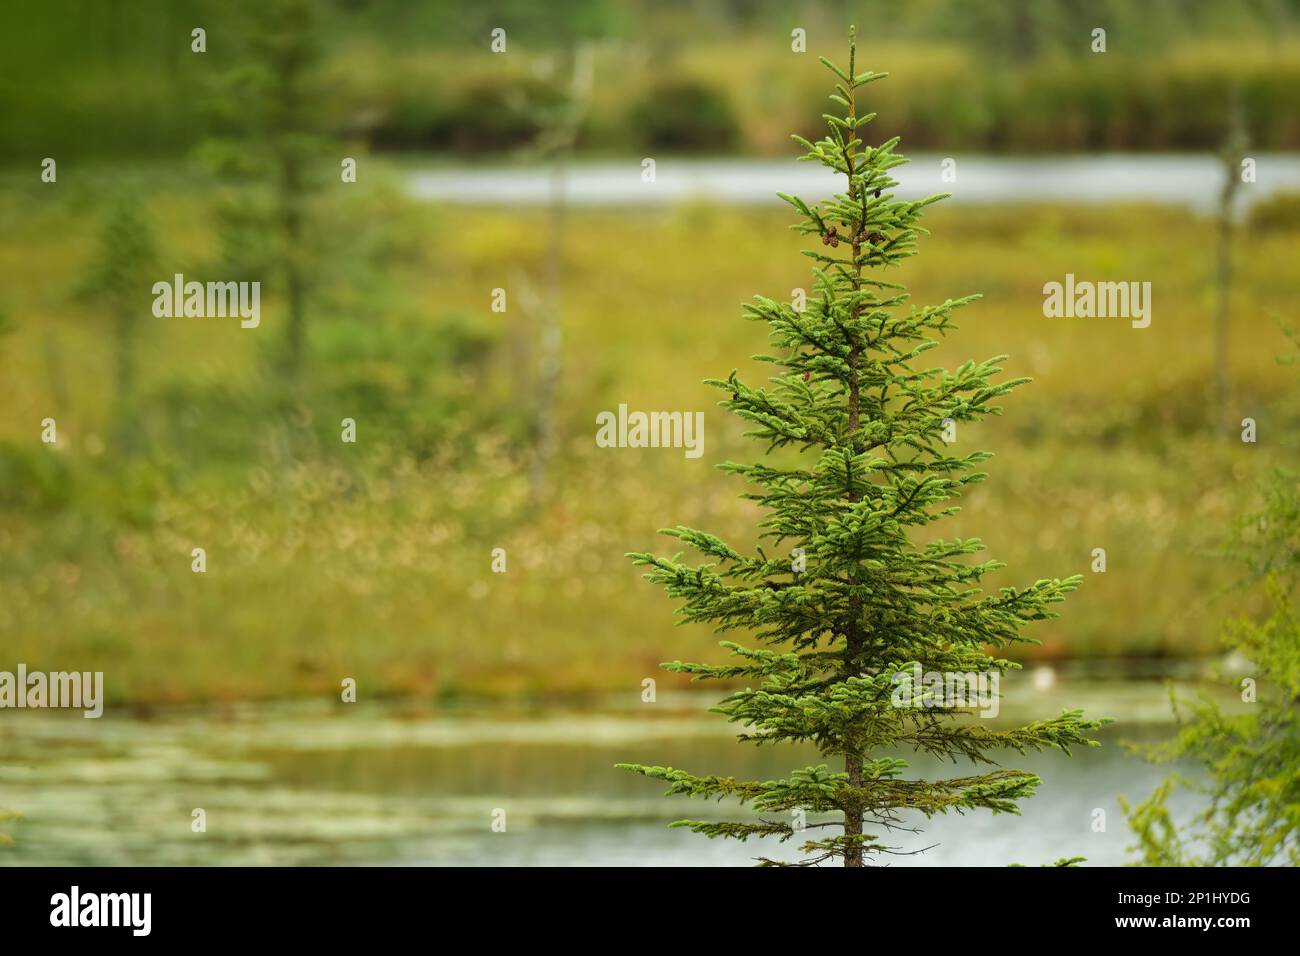 Un singolo albero sempreverde con piccoli pineconi si erge con una palude umida fuori fuoco dietro di esso. Foto Stock